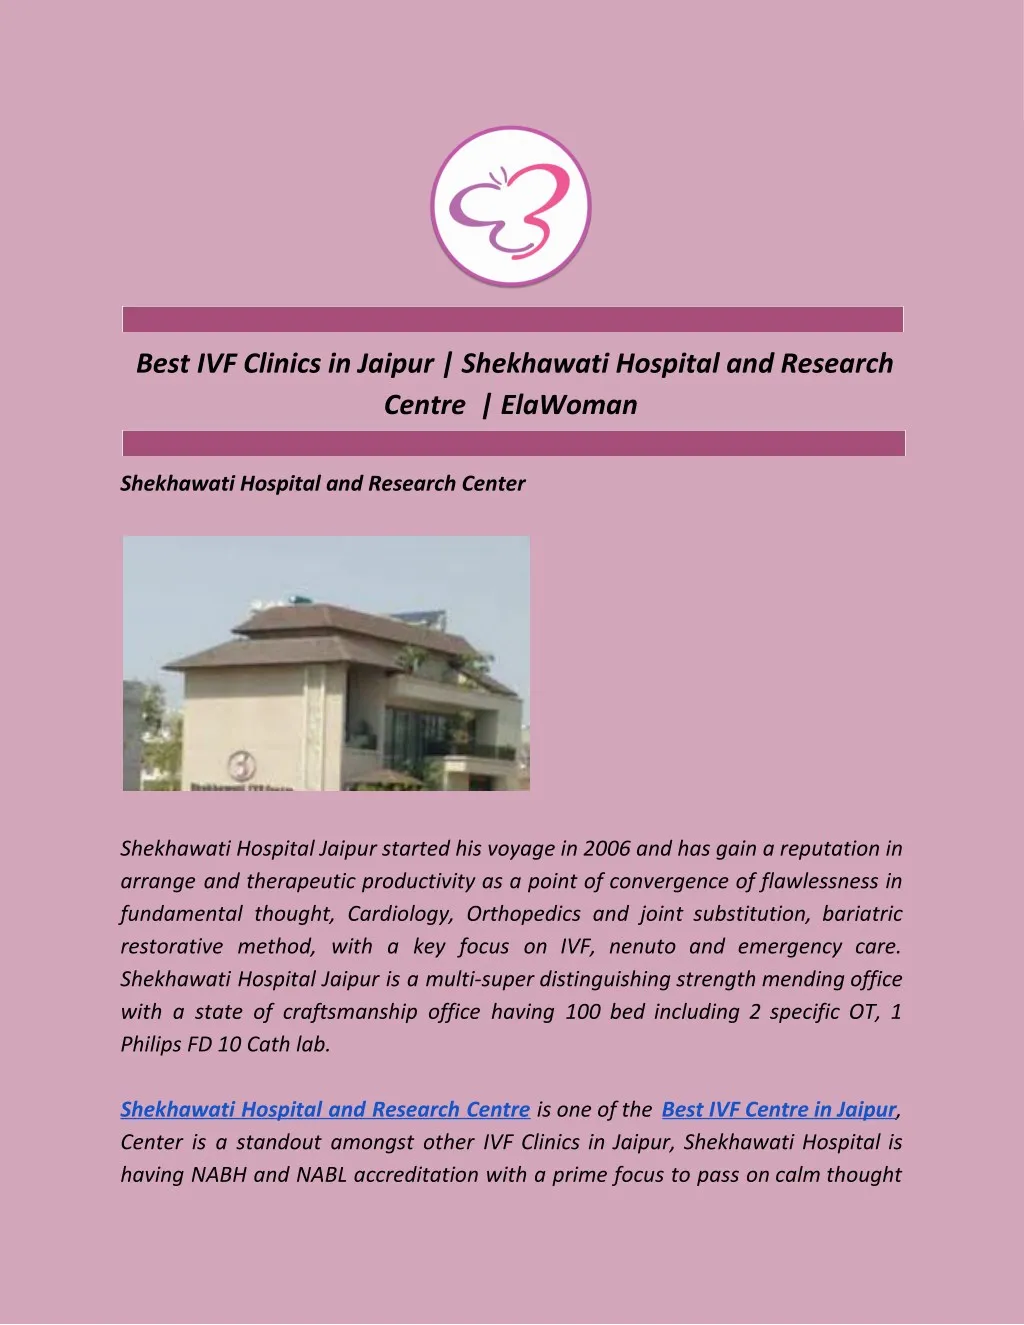 best ivf clinics in jaipur shekhawati hospital